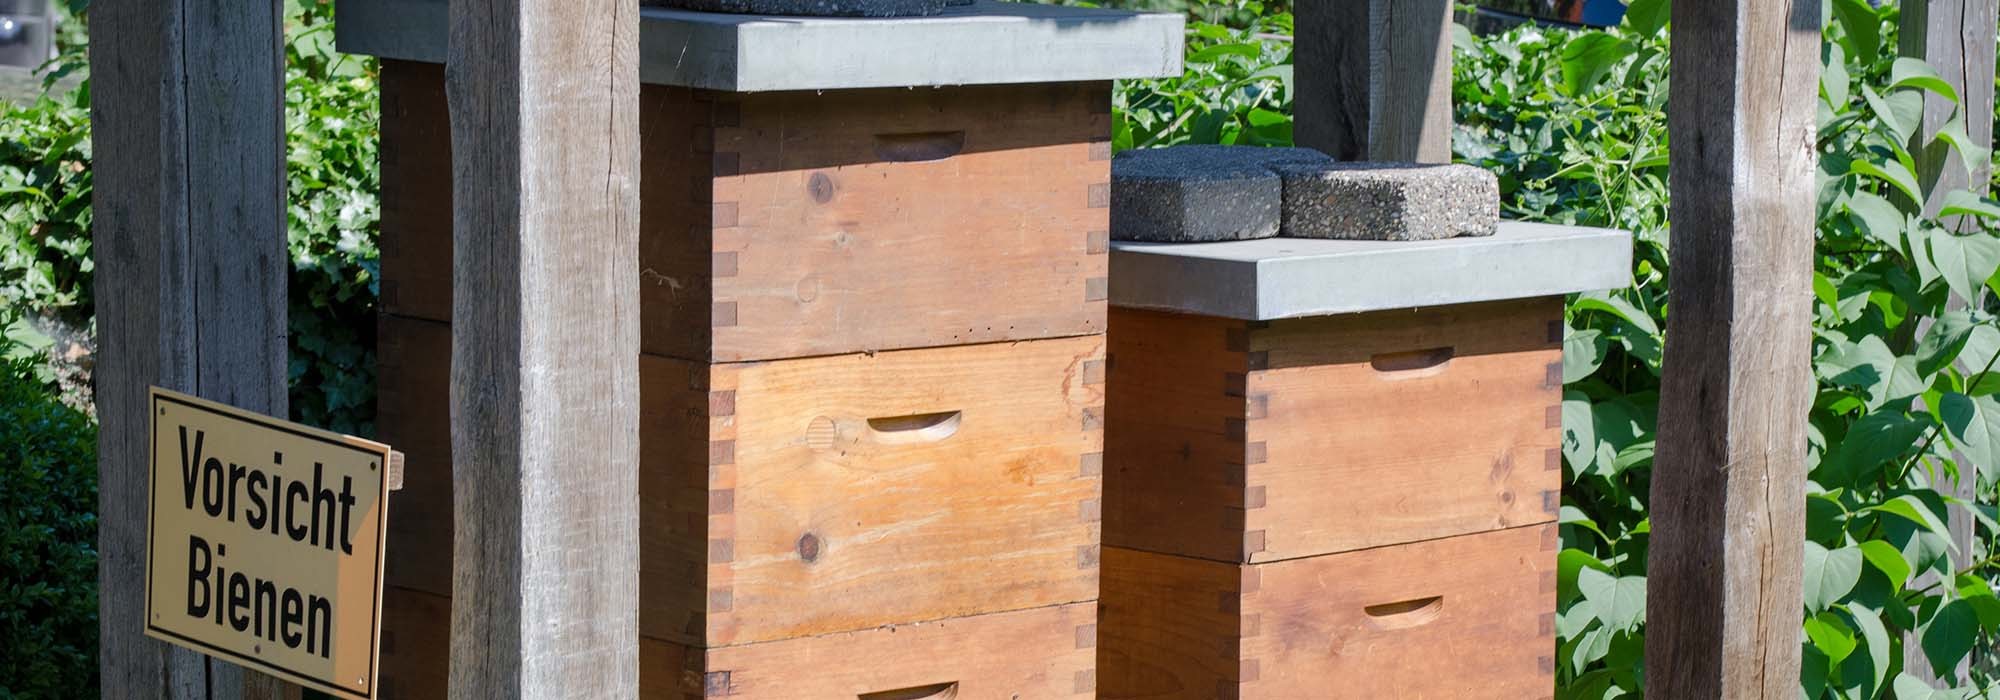 Bienenkästen unter einem Holzunterstand im Grünen